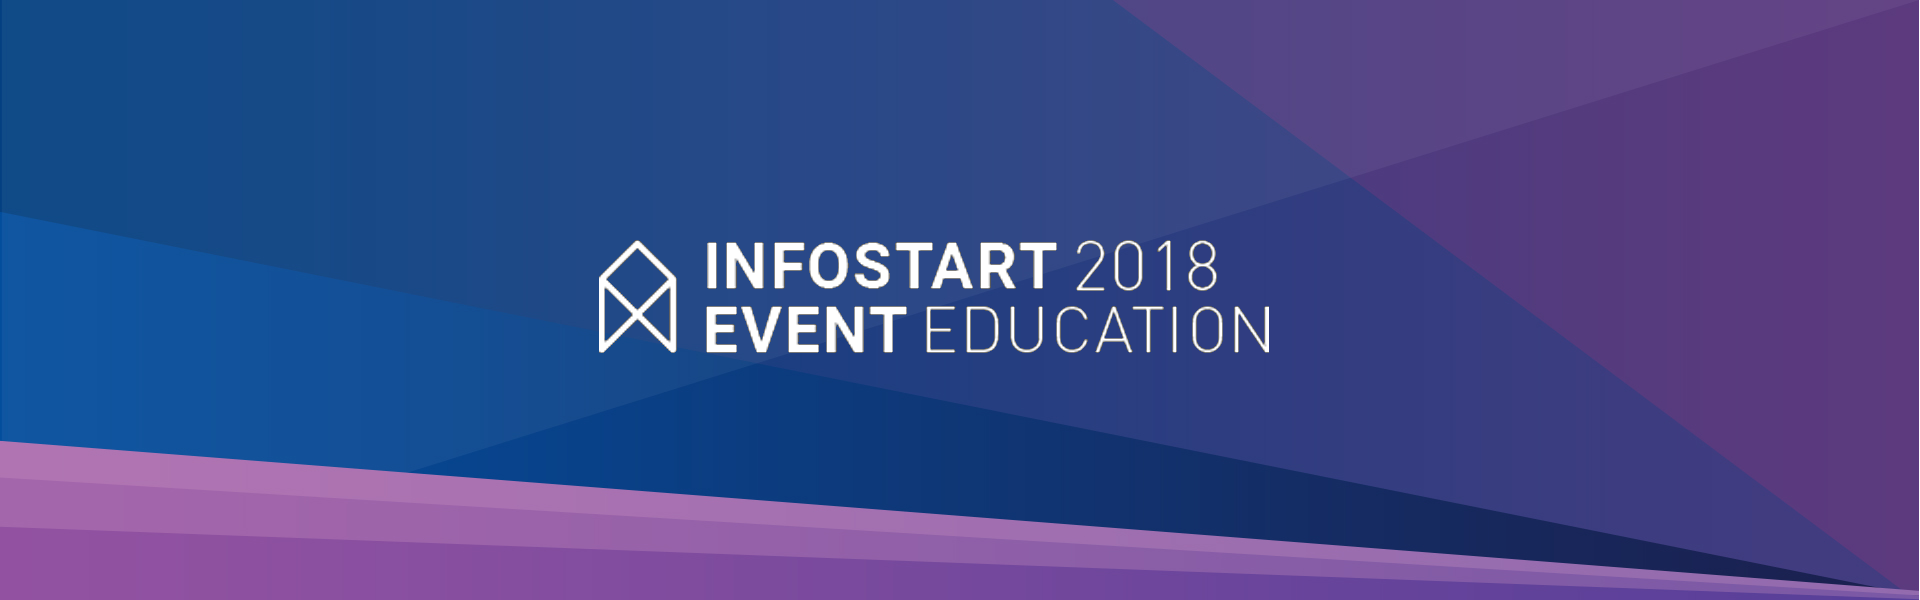 INFOSTART EVENT 2018 EDUCATION – VIII ежегодная конференция по управлению и автоматизации учета на платформе 1С:Предприятие, которая соберет 1000 участников из разных регионов России и мира.